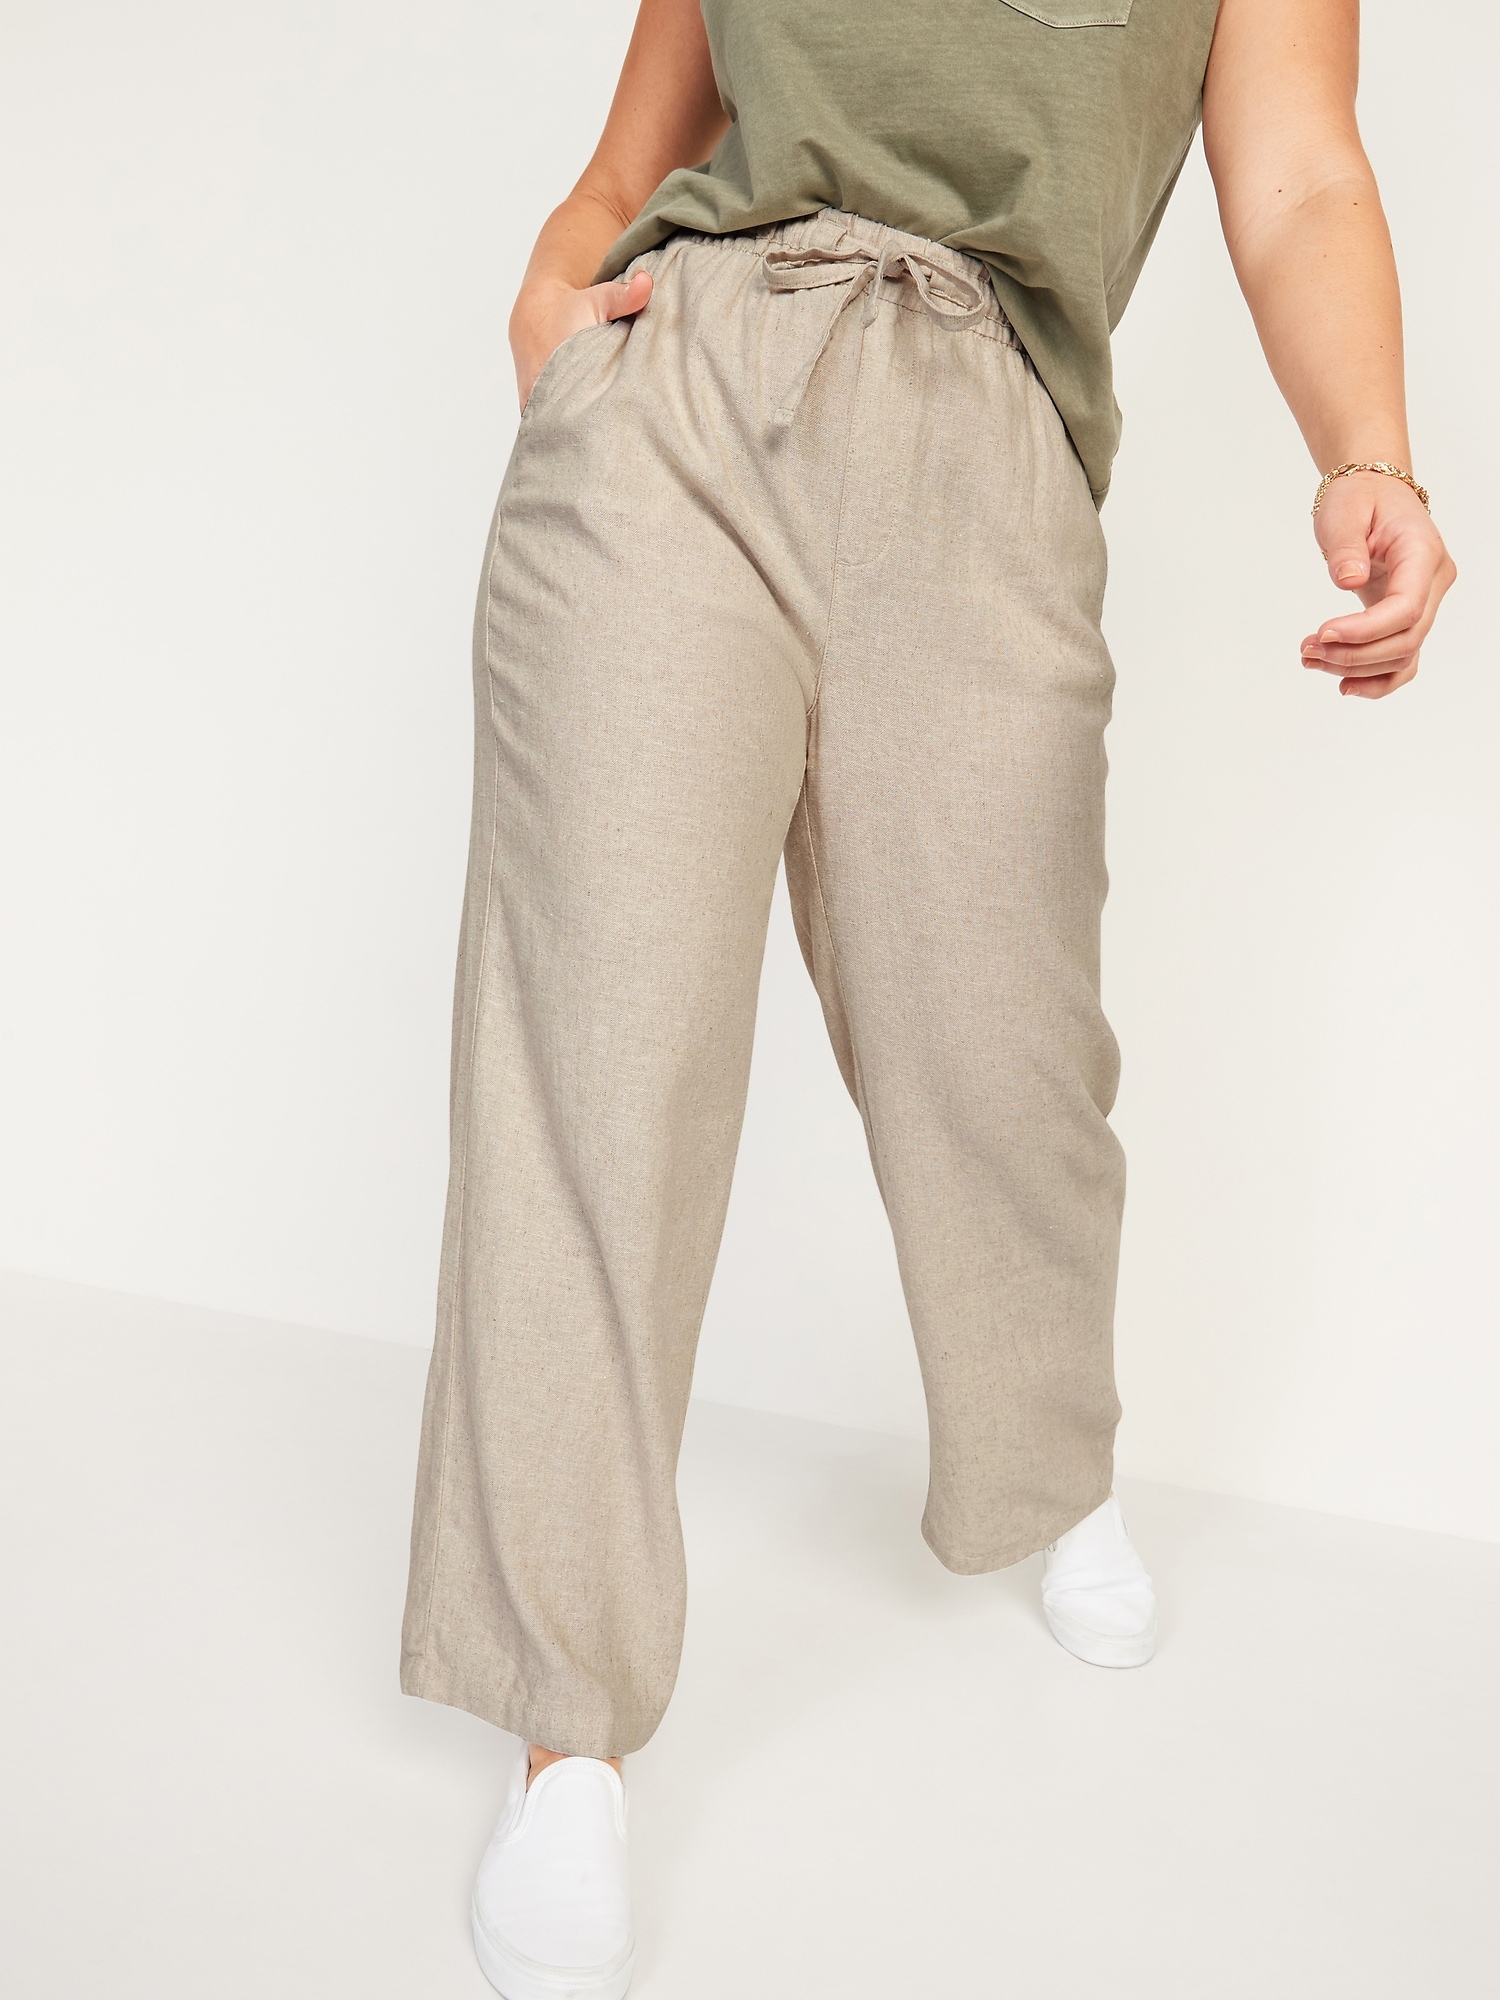 High-Waisted Linen-Blend Wide-Leg Pants for Women